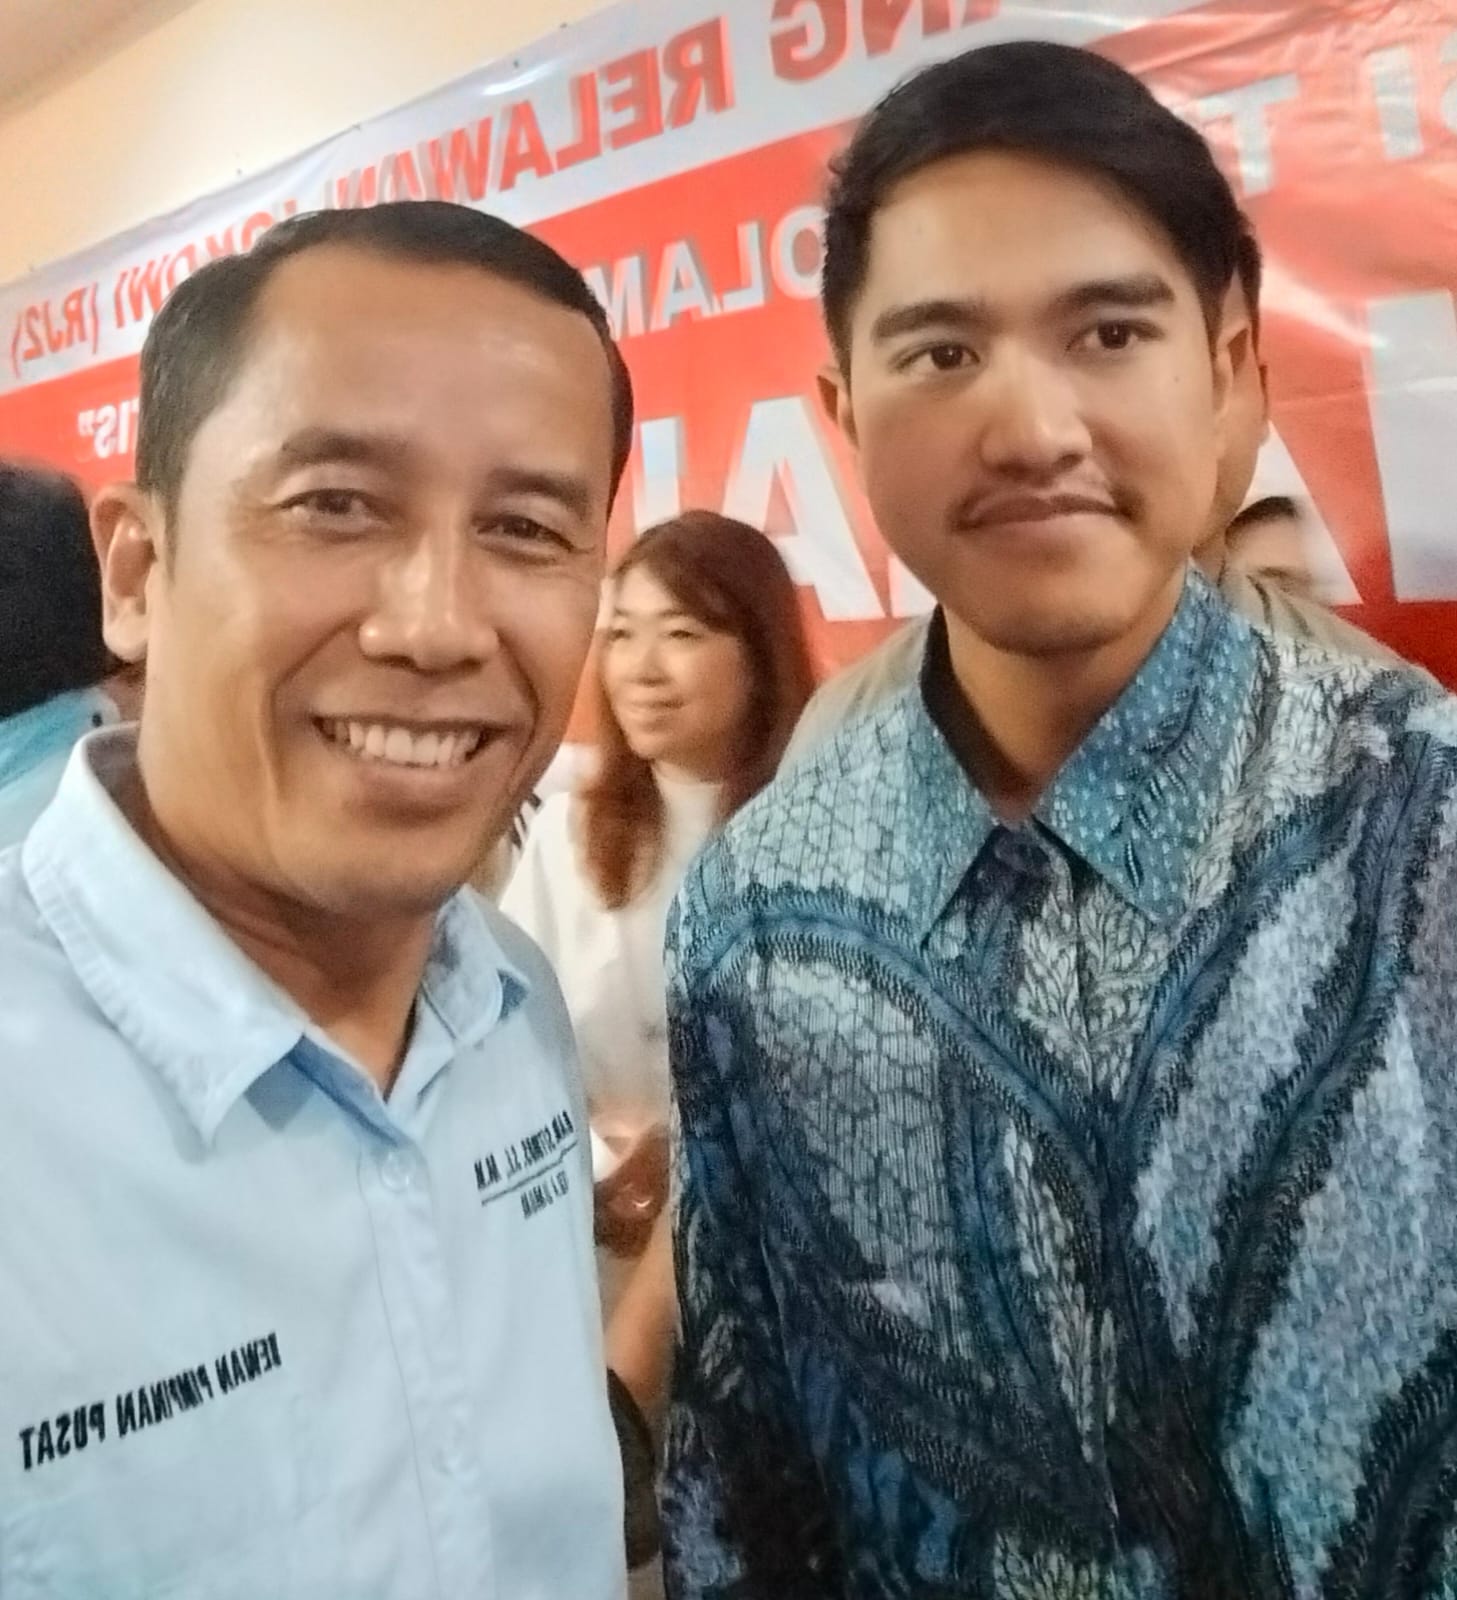 Ramses Sitorus: Stop Membuli Jokowi, Keluarganya Dipilih Rakyat Karena Mampu Bukan Nepotisme